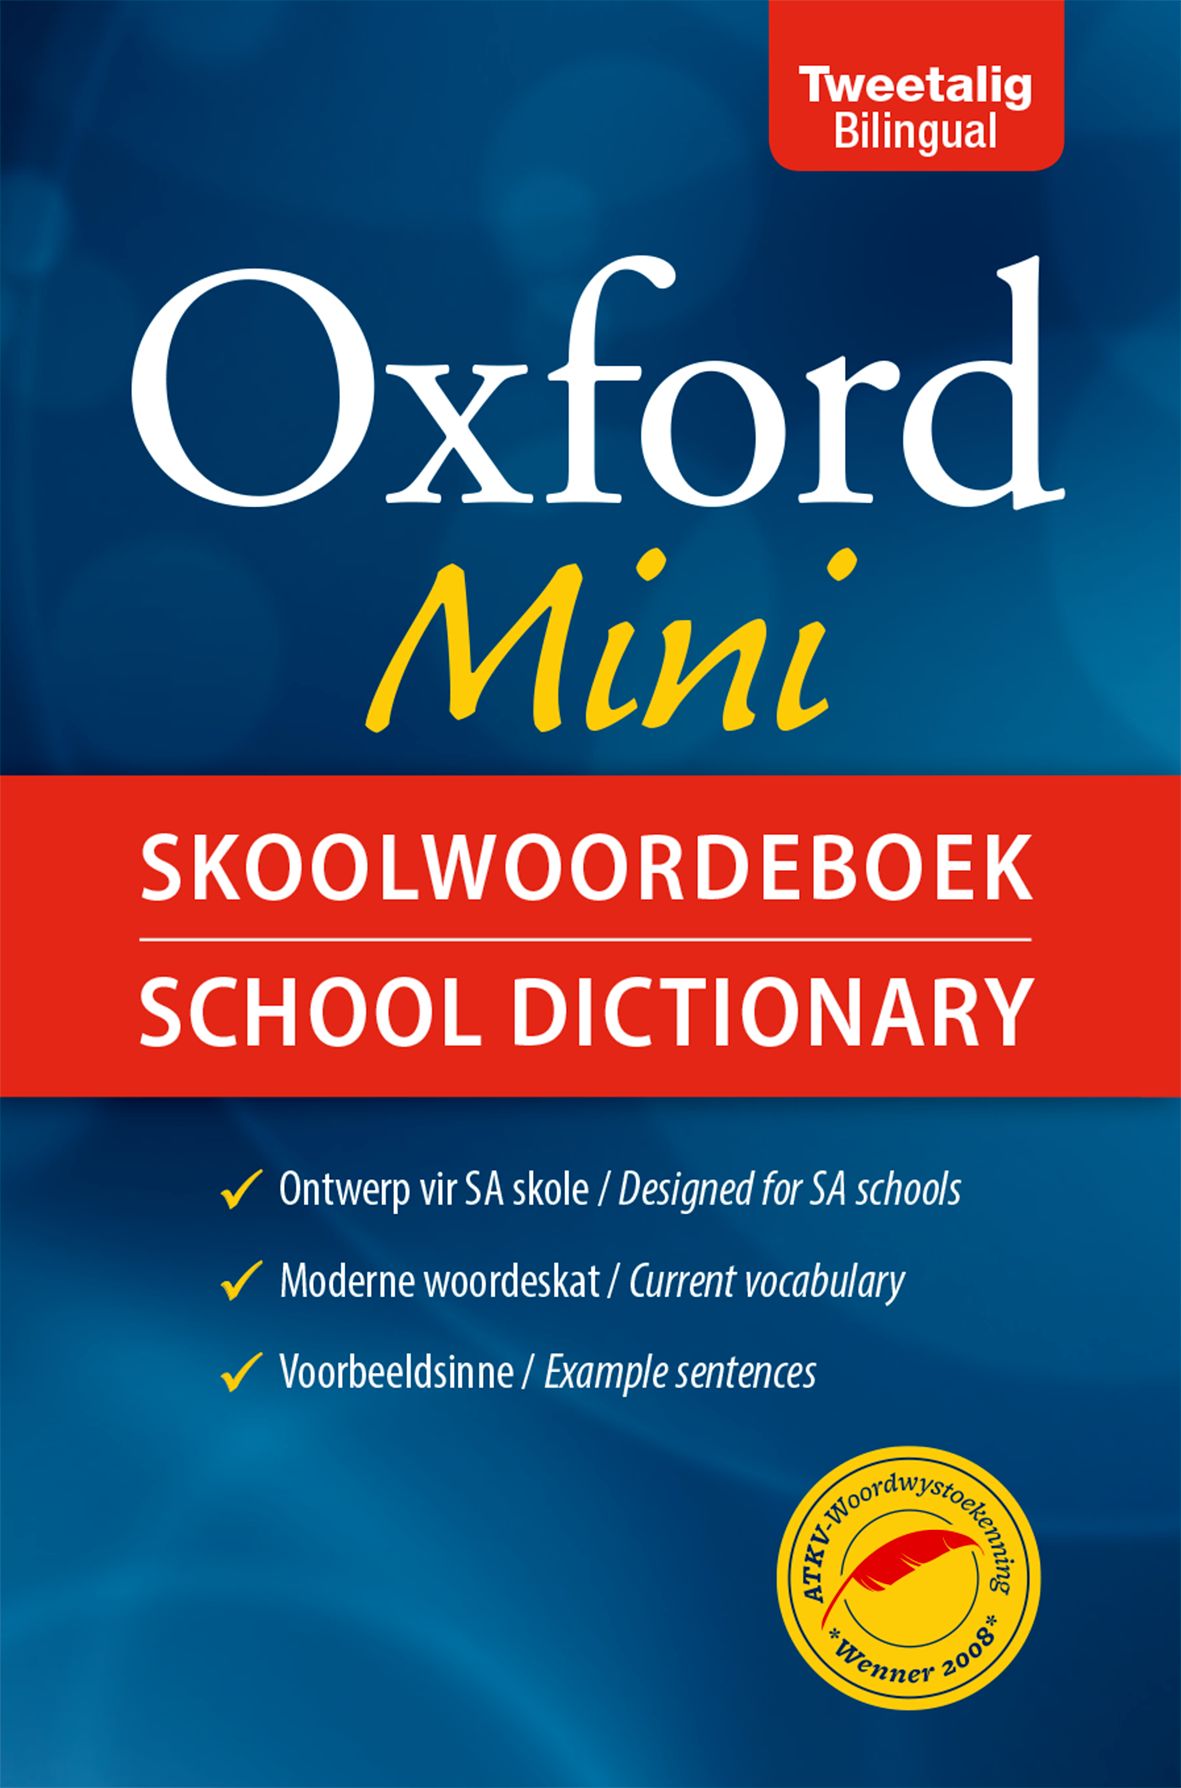 Oxford Mini Skoolwoordeboek/School Dictionary